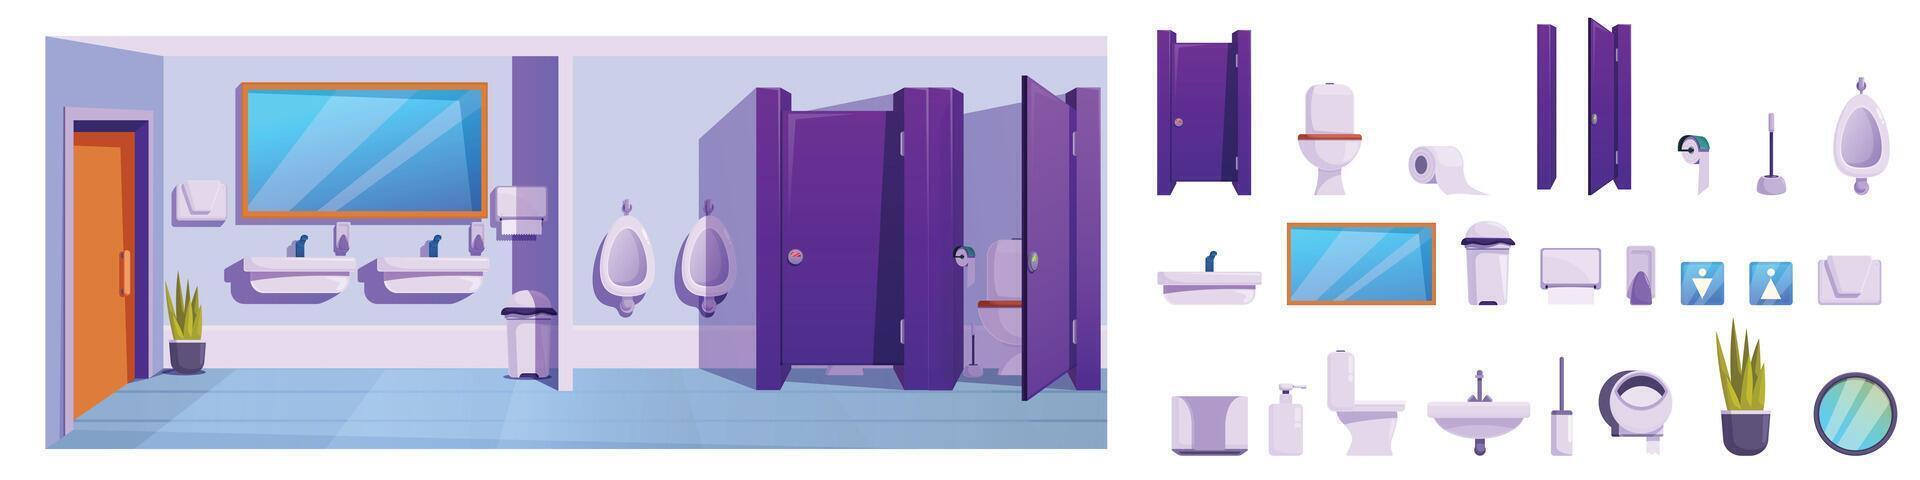 School toilet interior icons set cartoon vector. Public restroom vector